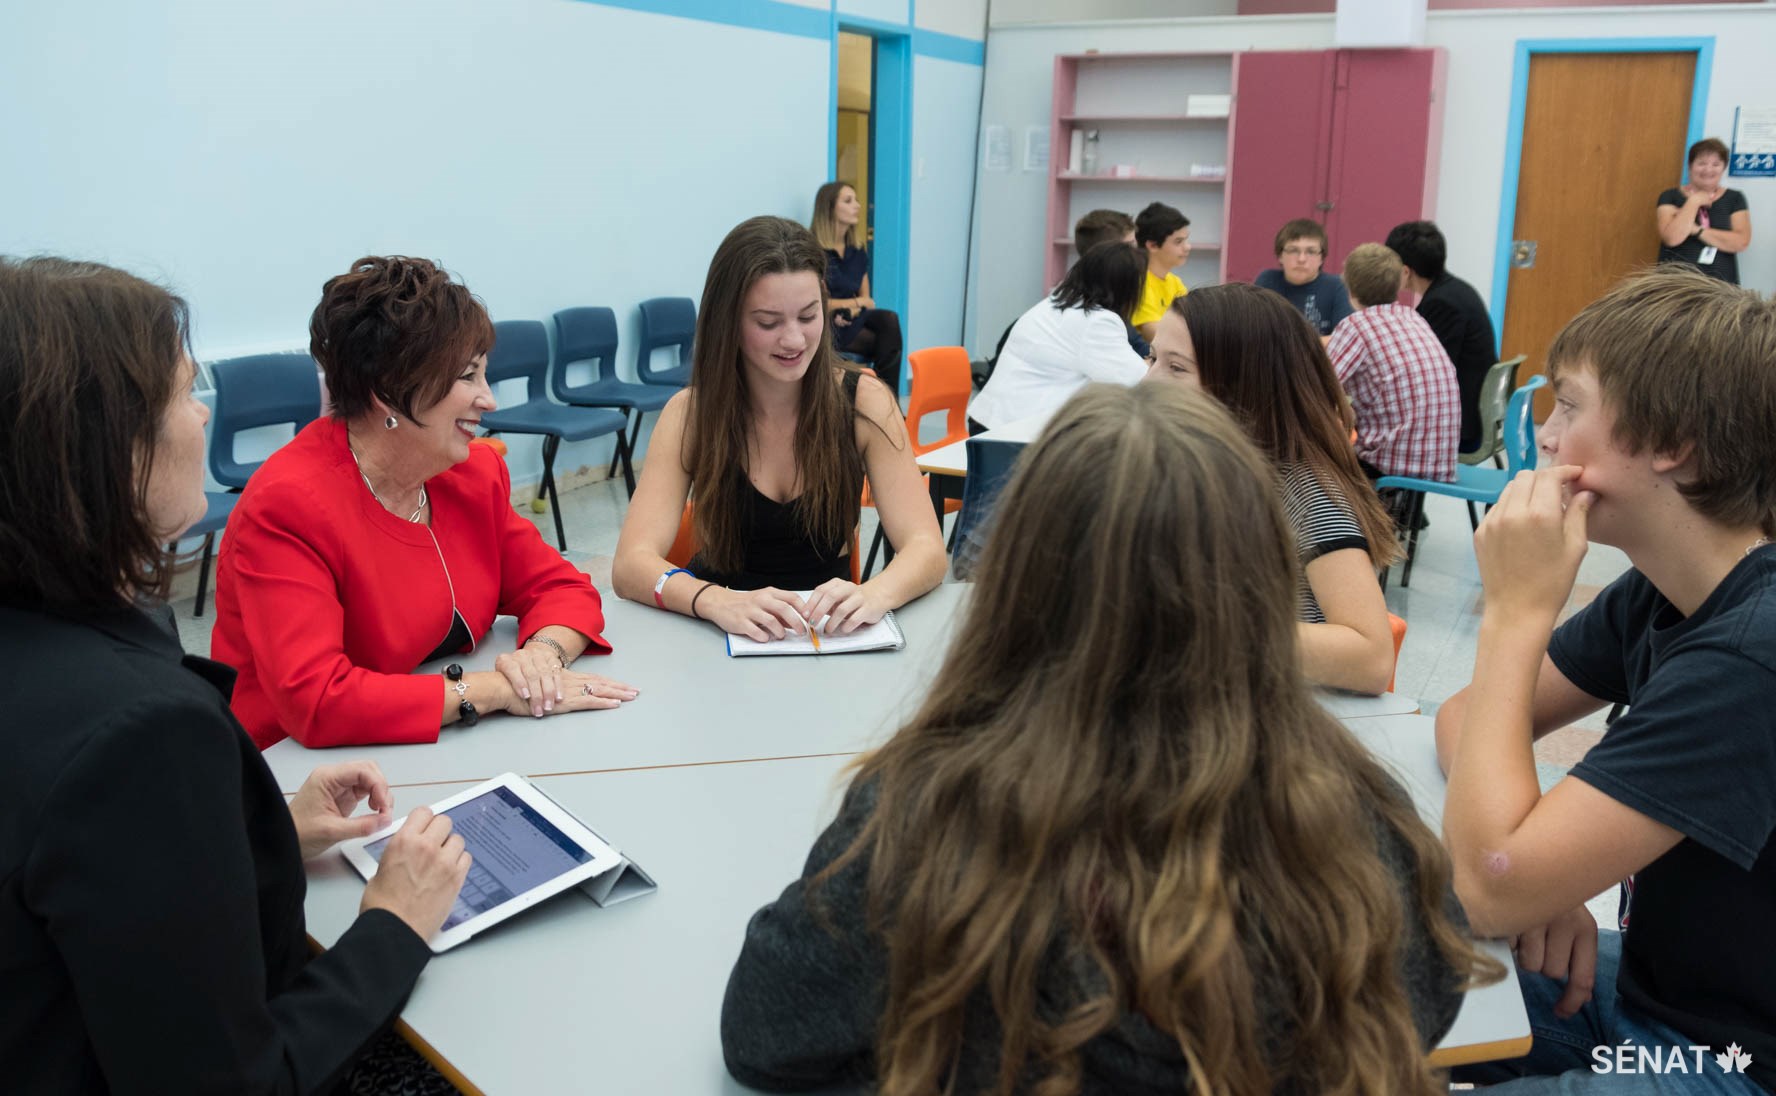 La sénatrice Tardif discute avec des étudiants au sujet des droits linguistiques au Canada lors d'une mission d'étude à l'Île-du-Prince-Édouard en septembre 2017. Cette mission d'étude a été effectuée dans le cadre d'une étude du Comité sénatorial des langues officielles sur la modernisation de la Loi sur les langues officielles.